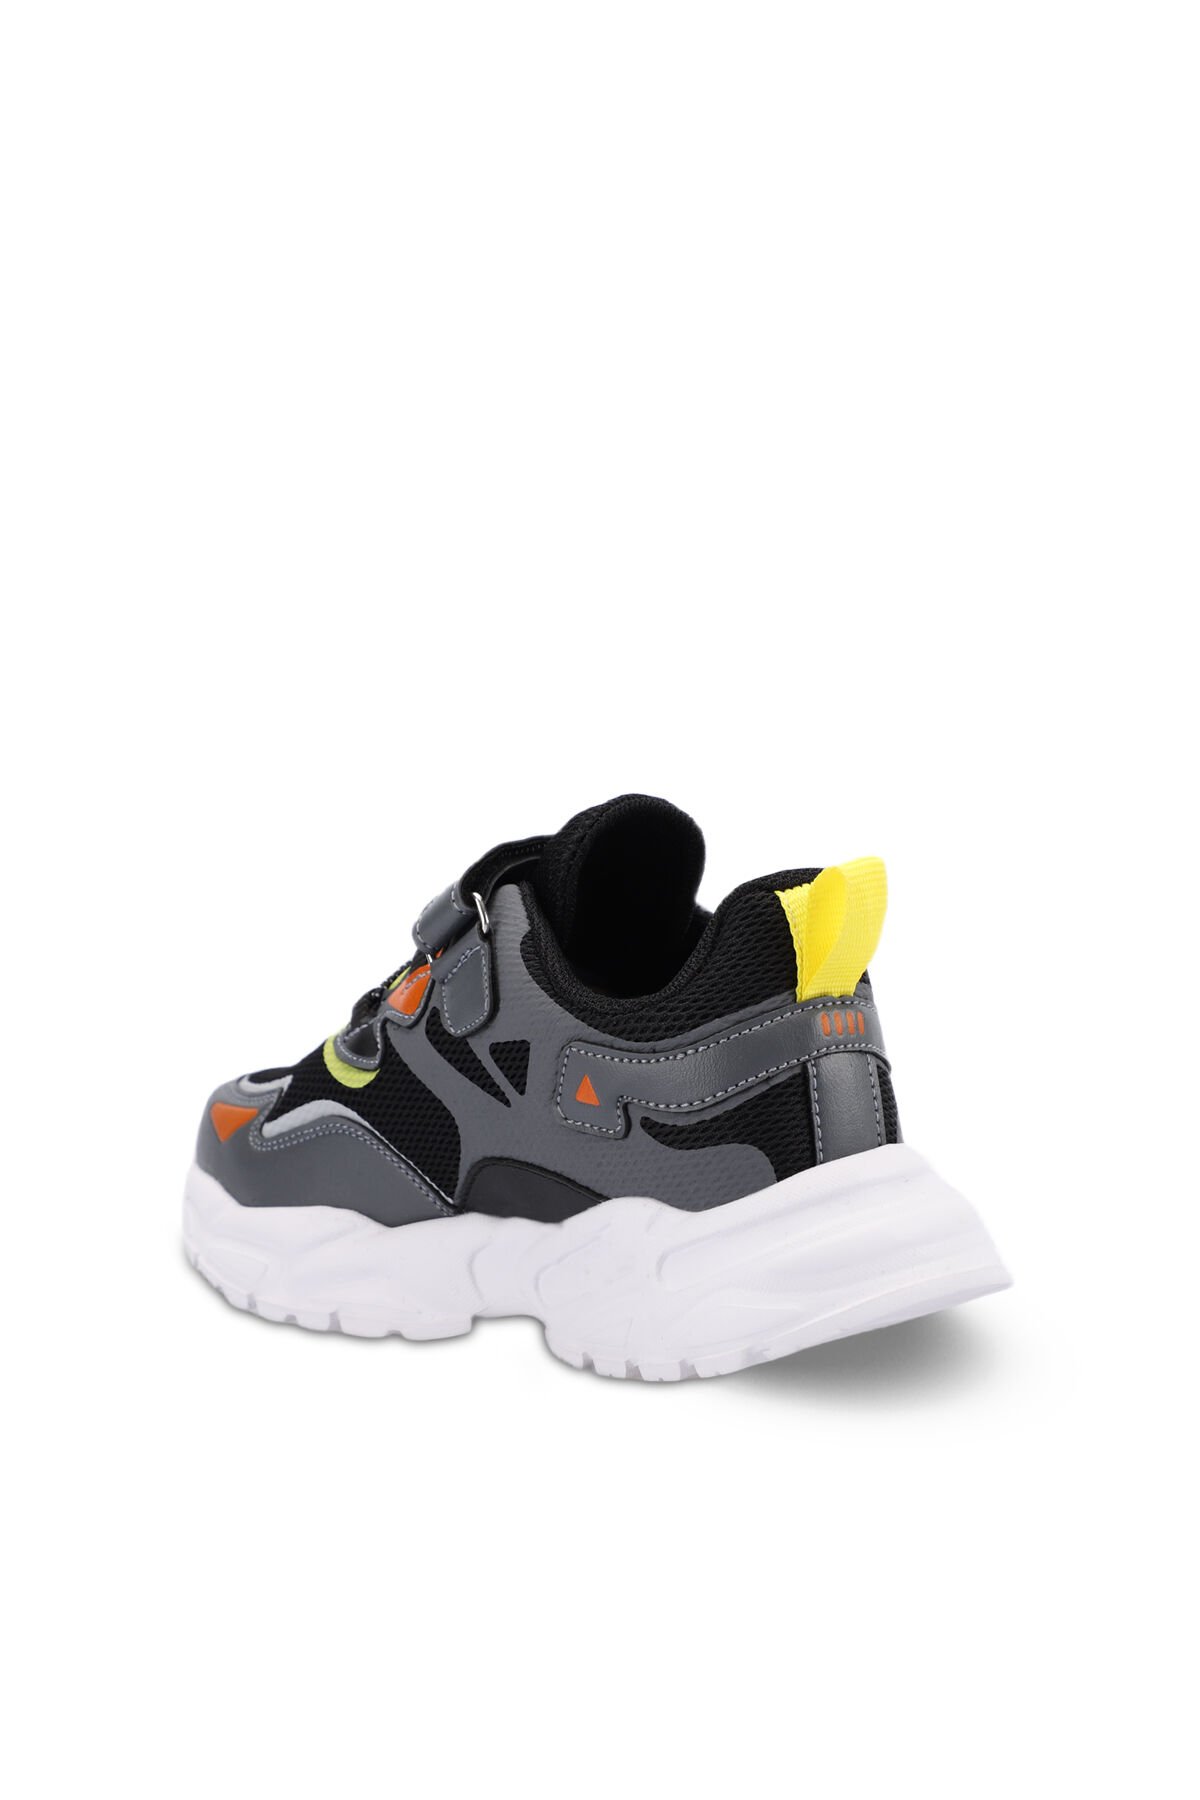 Slazenger KAJAL I Sneaker Erkek Çocuk Ayakkabı Koyu Gri / Siyah - Thumbnail